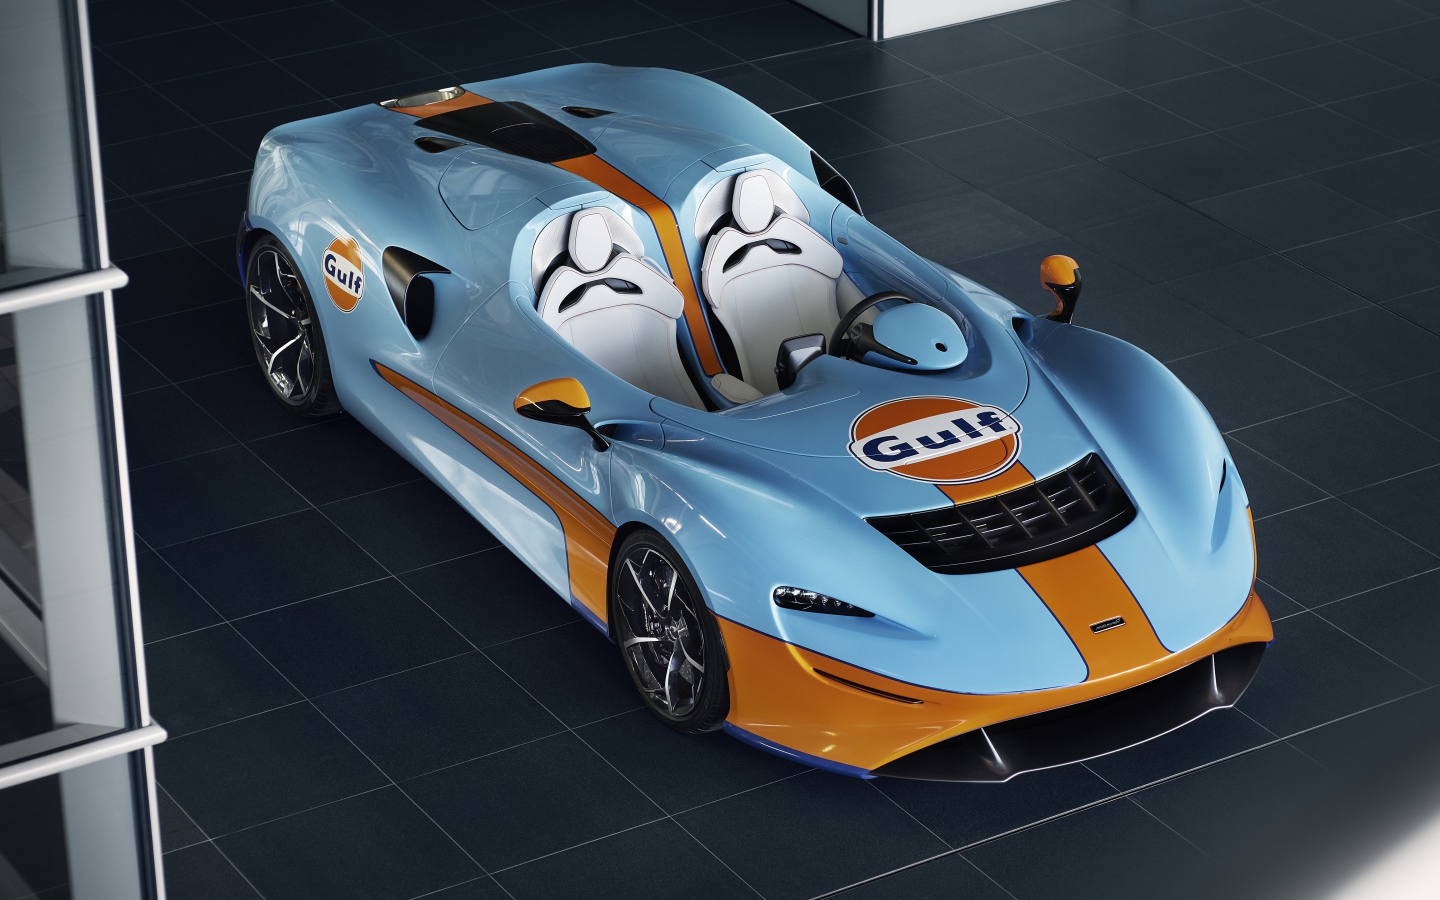 Спортивный автомобиль McLaren Elva Gulf Theme By MSO 2021 года вид сверху